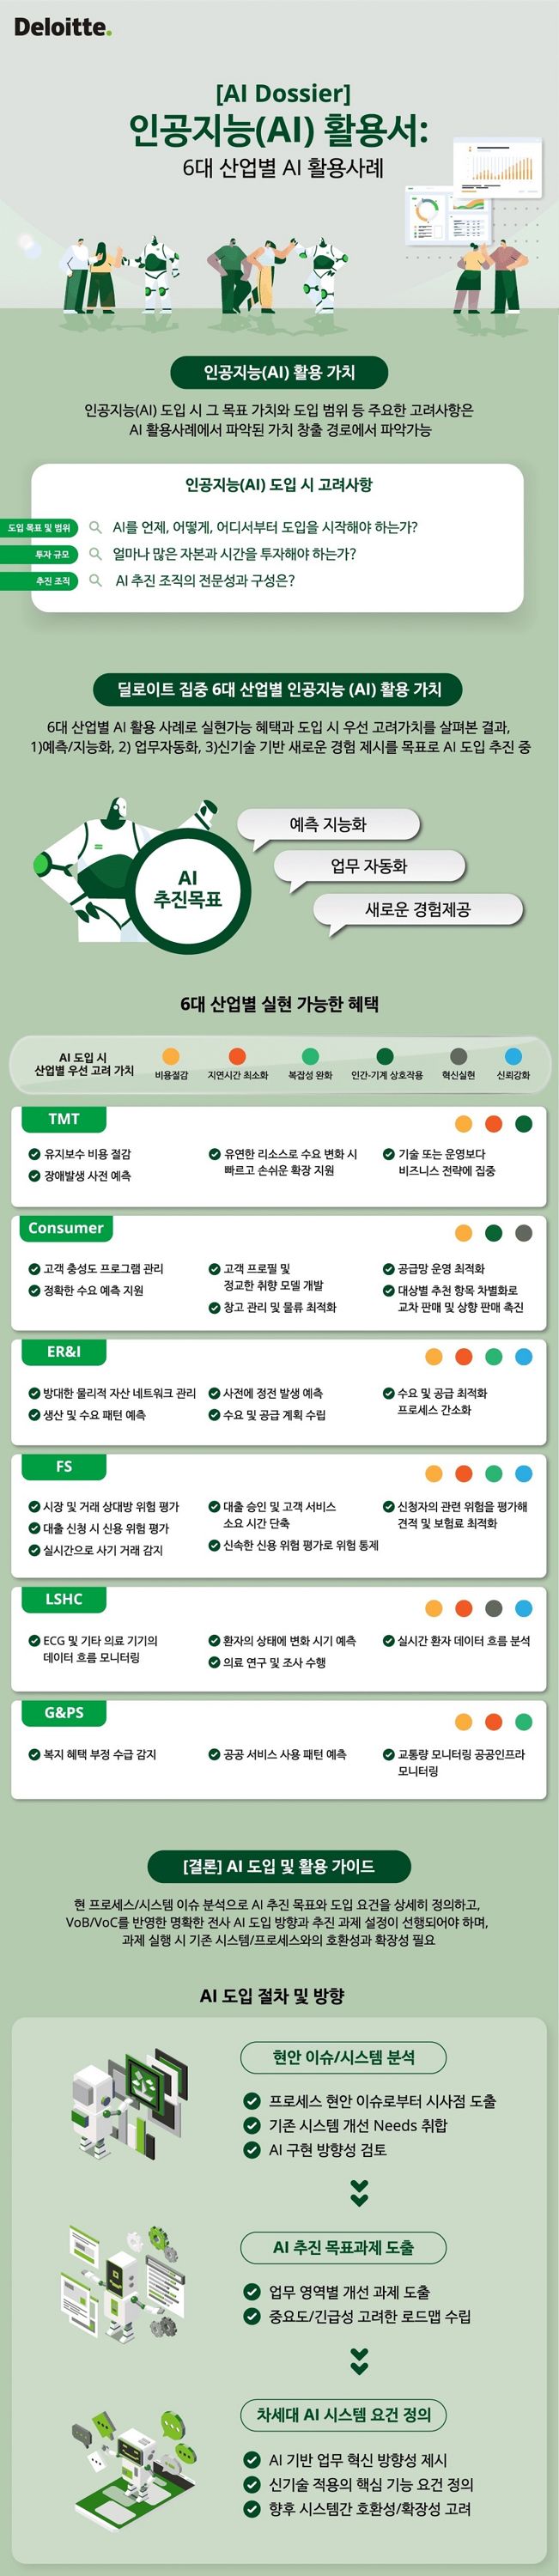 한국 딜로이트 그룹이 발표한 ‘인공지능 활용서 6대 산업별 활용사례’ 개요. 딜로이트 제공